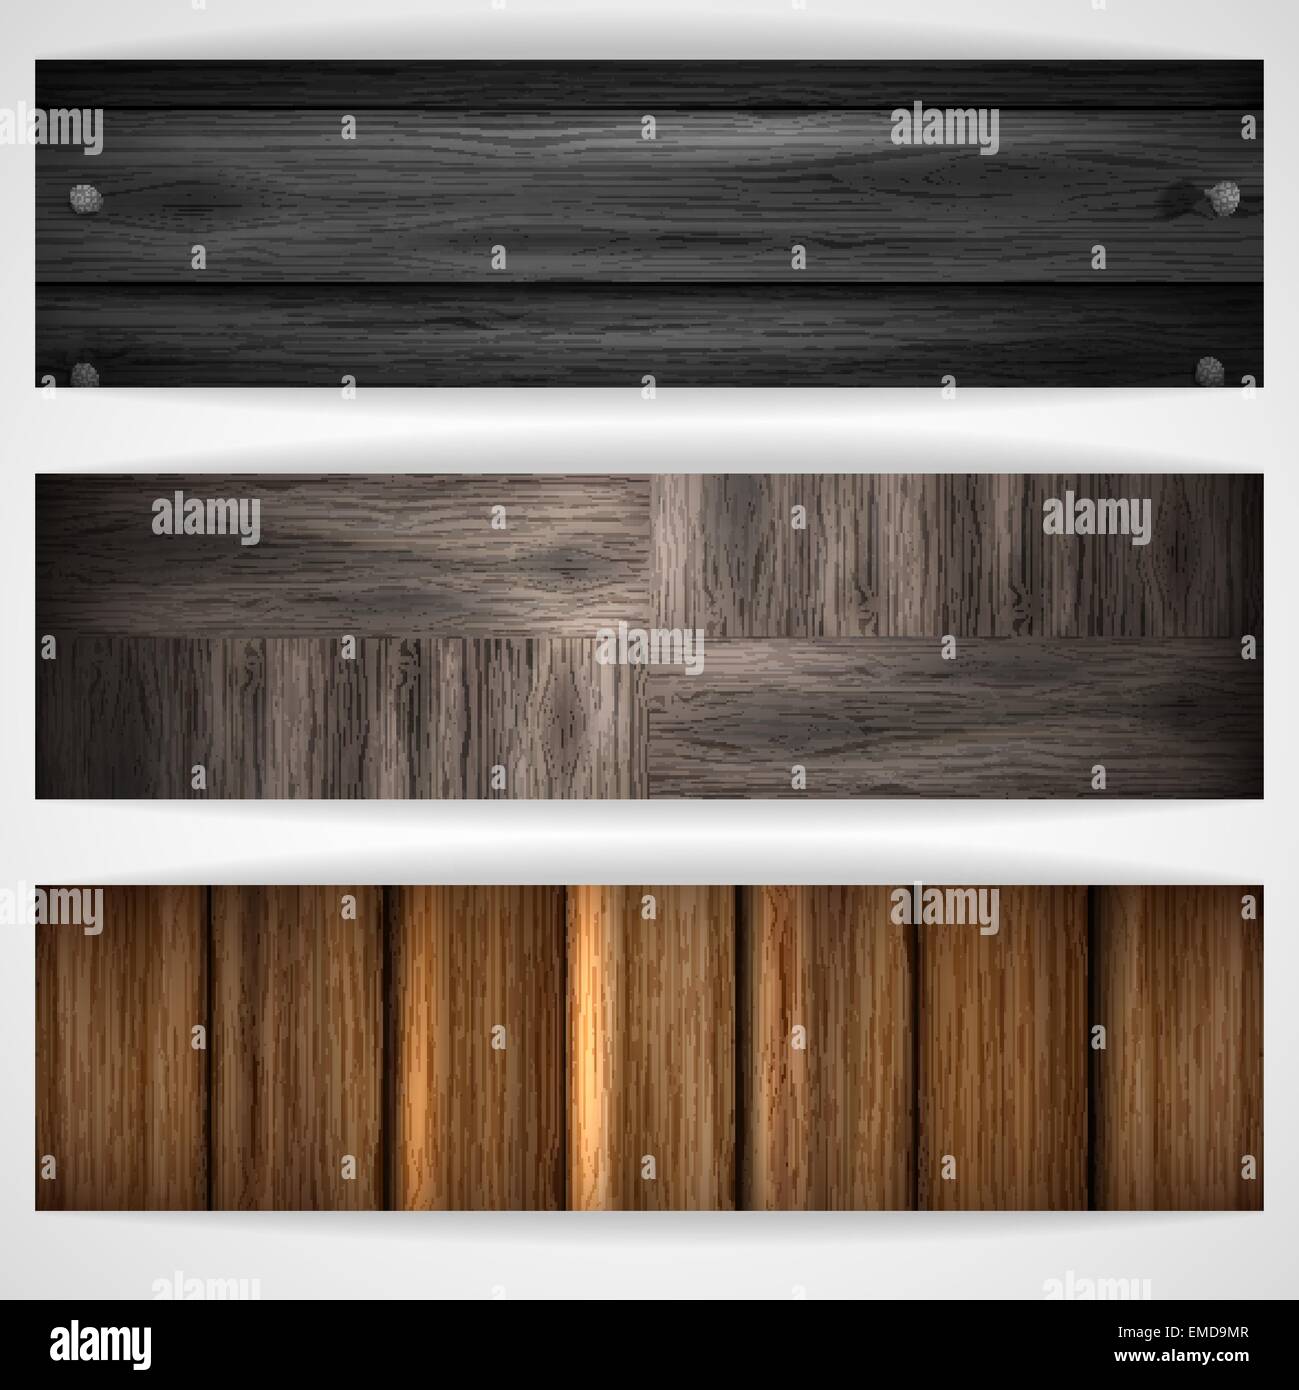 Wooden texture banner. Stock Vector